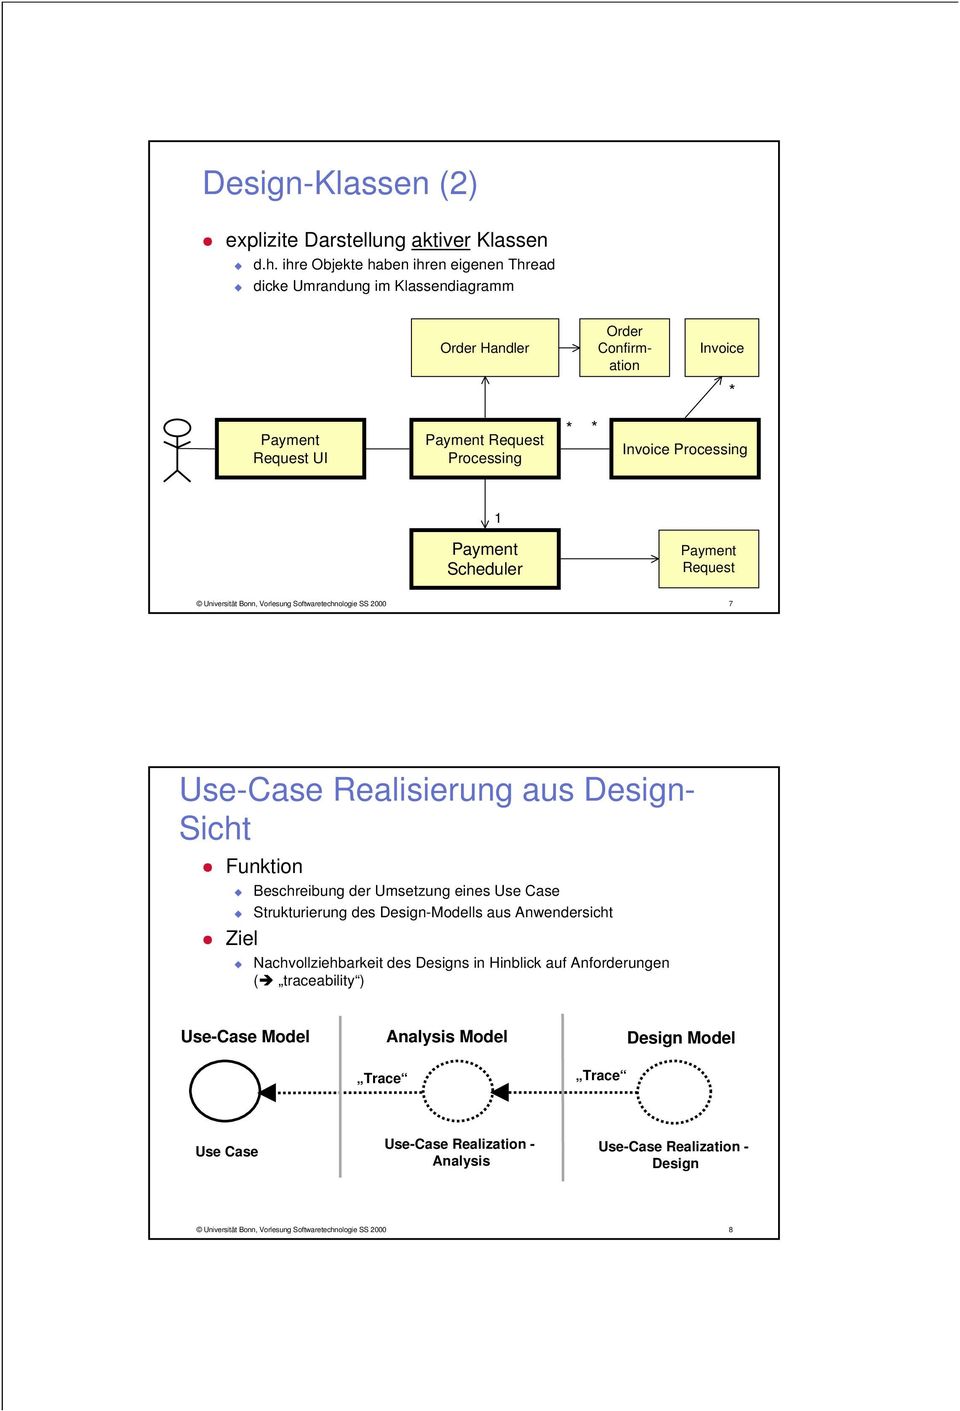 Processing 1 Scheduler Request Universität Bonn, Vorlesung Softwaretechnologie SS 2000 7 Use-Case Realisierung aus - Sicht Funktion Ziel Beschreibung der Umsetzung